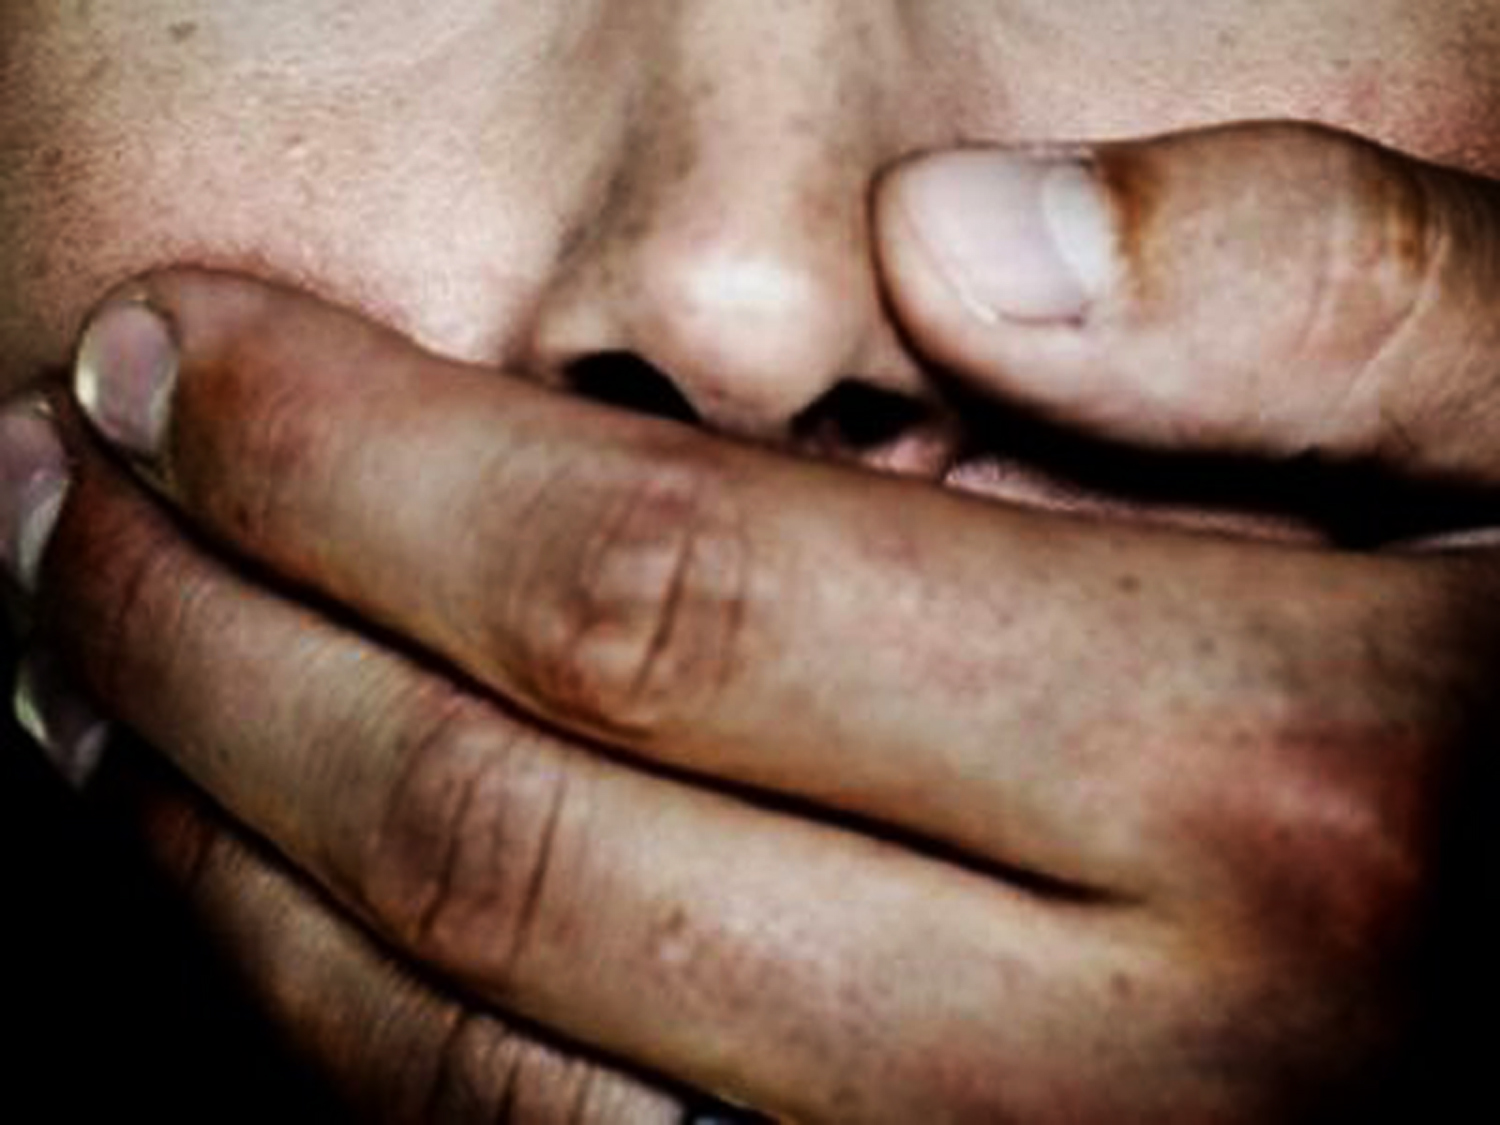 Φρίκη: 17χρονη μαθήτρια έπεσε θύμα βιασμού από 3 νέους στη Δράμα